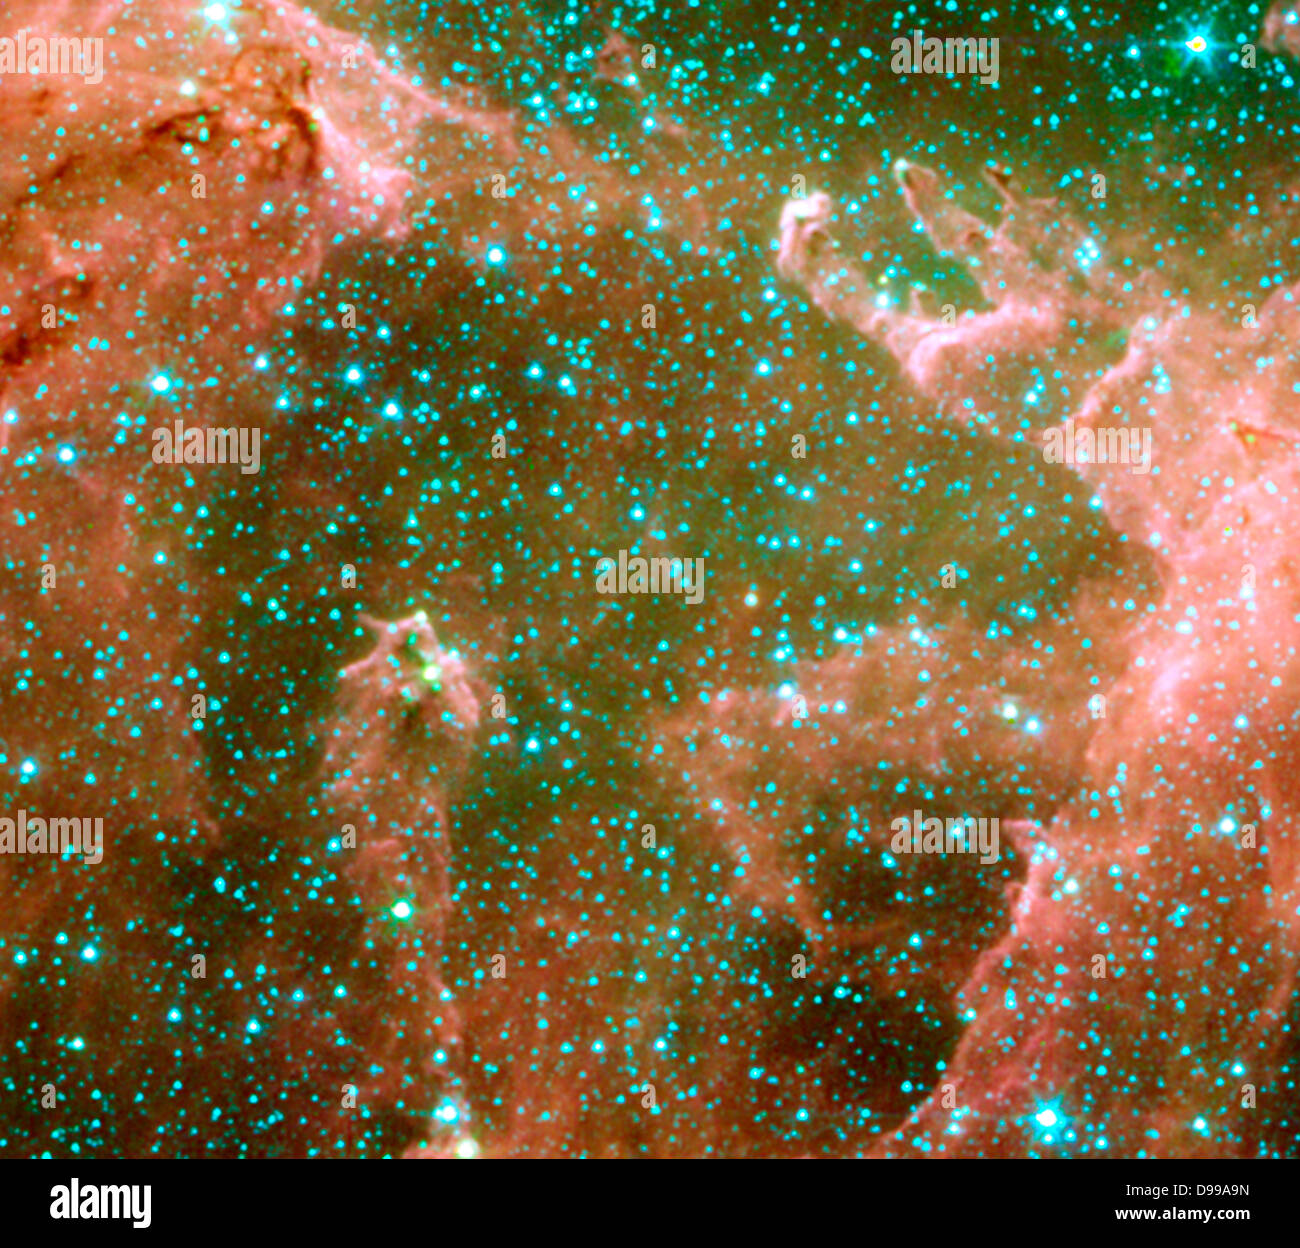 The Eagle nebula. Spitzer Space Telescope. Stock Photo